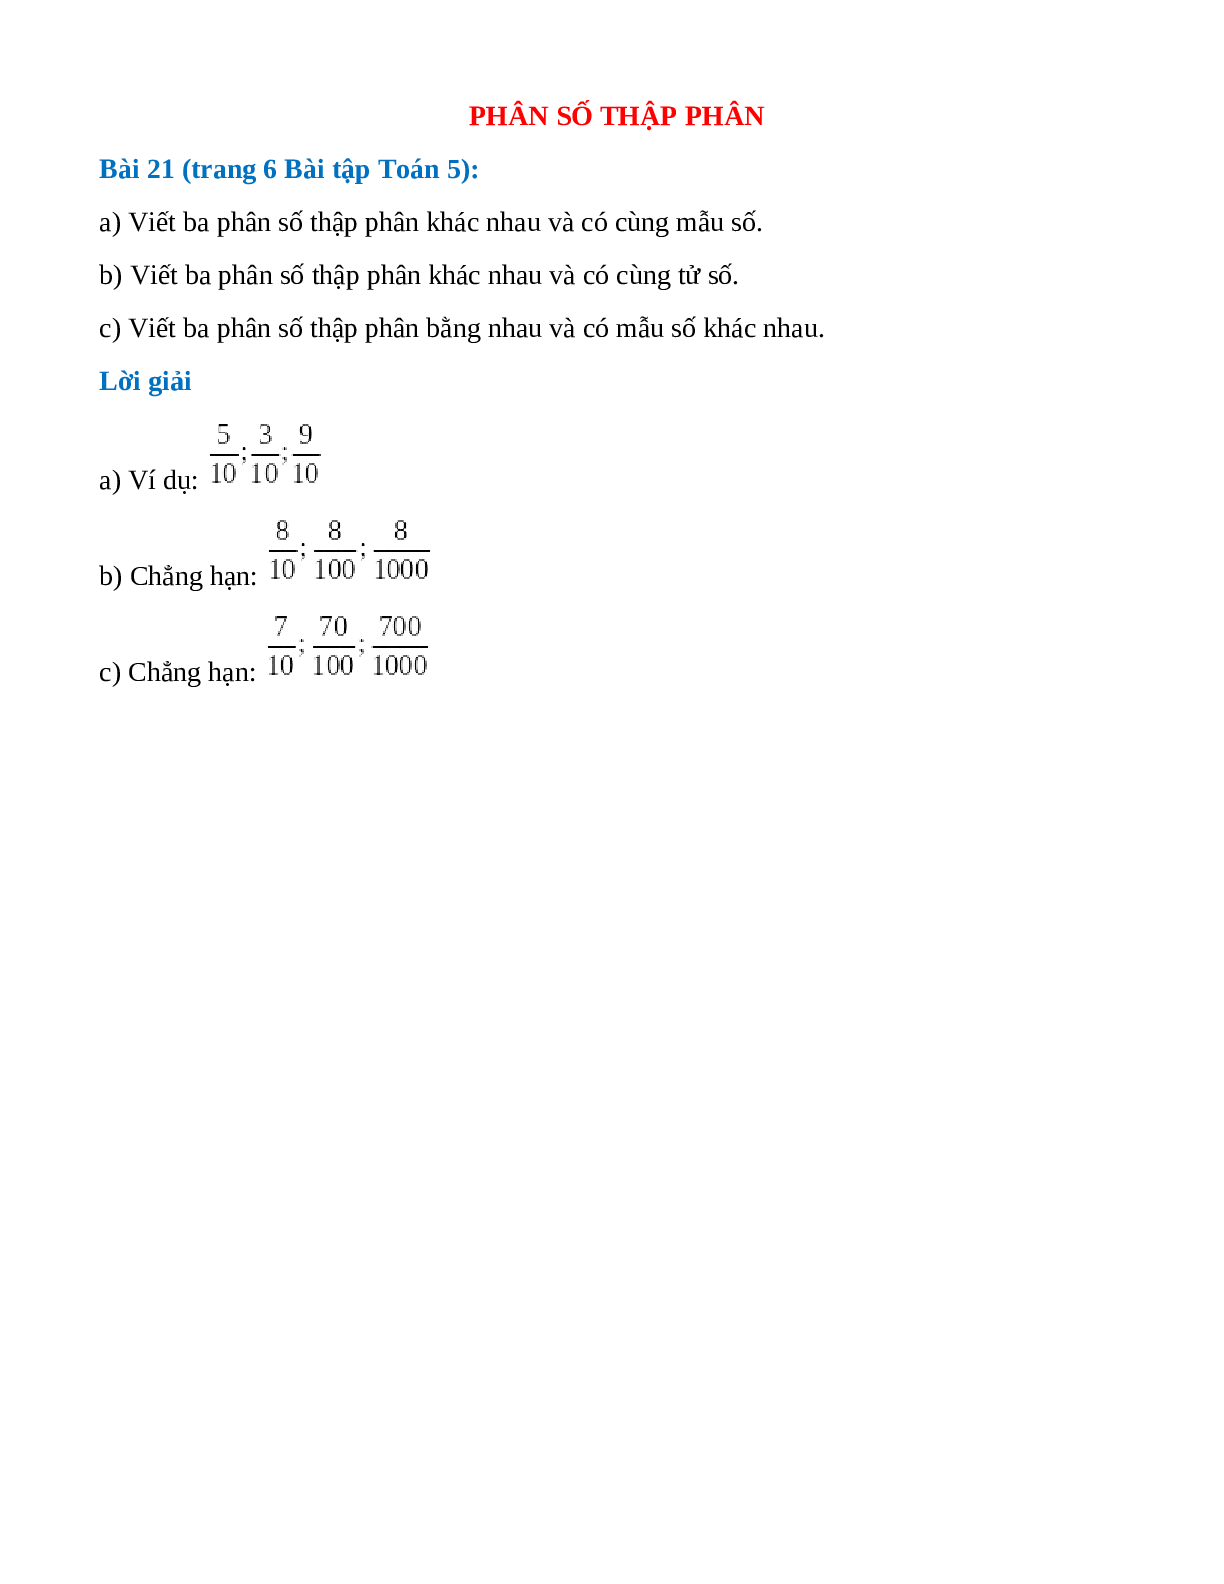 Viết ba phân số thập phân khác nhau và có cùng mẫu số (trang 1)